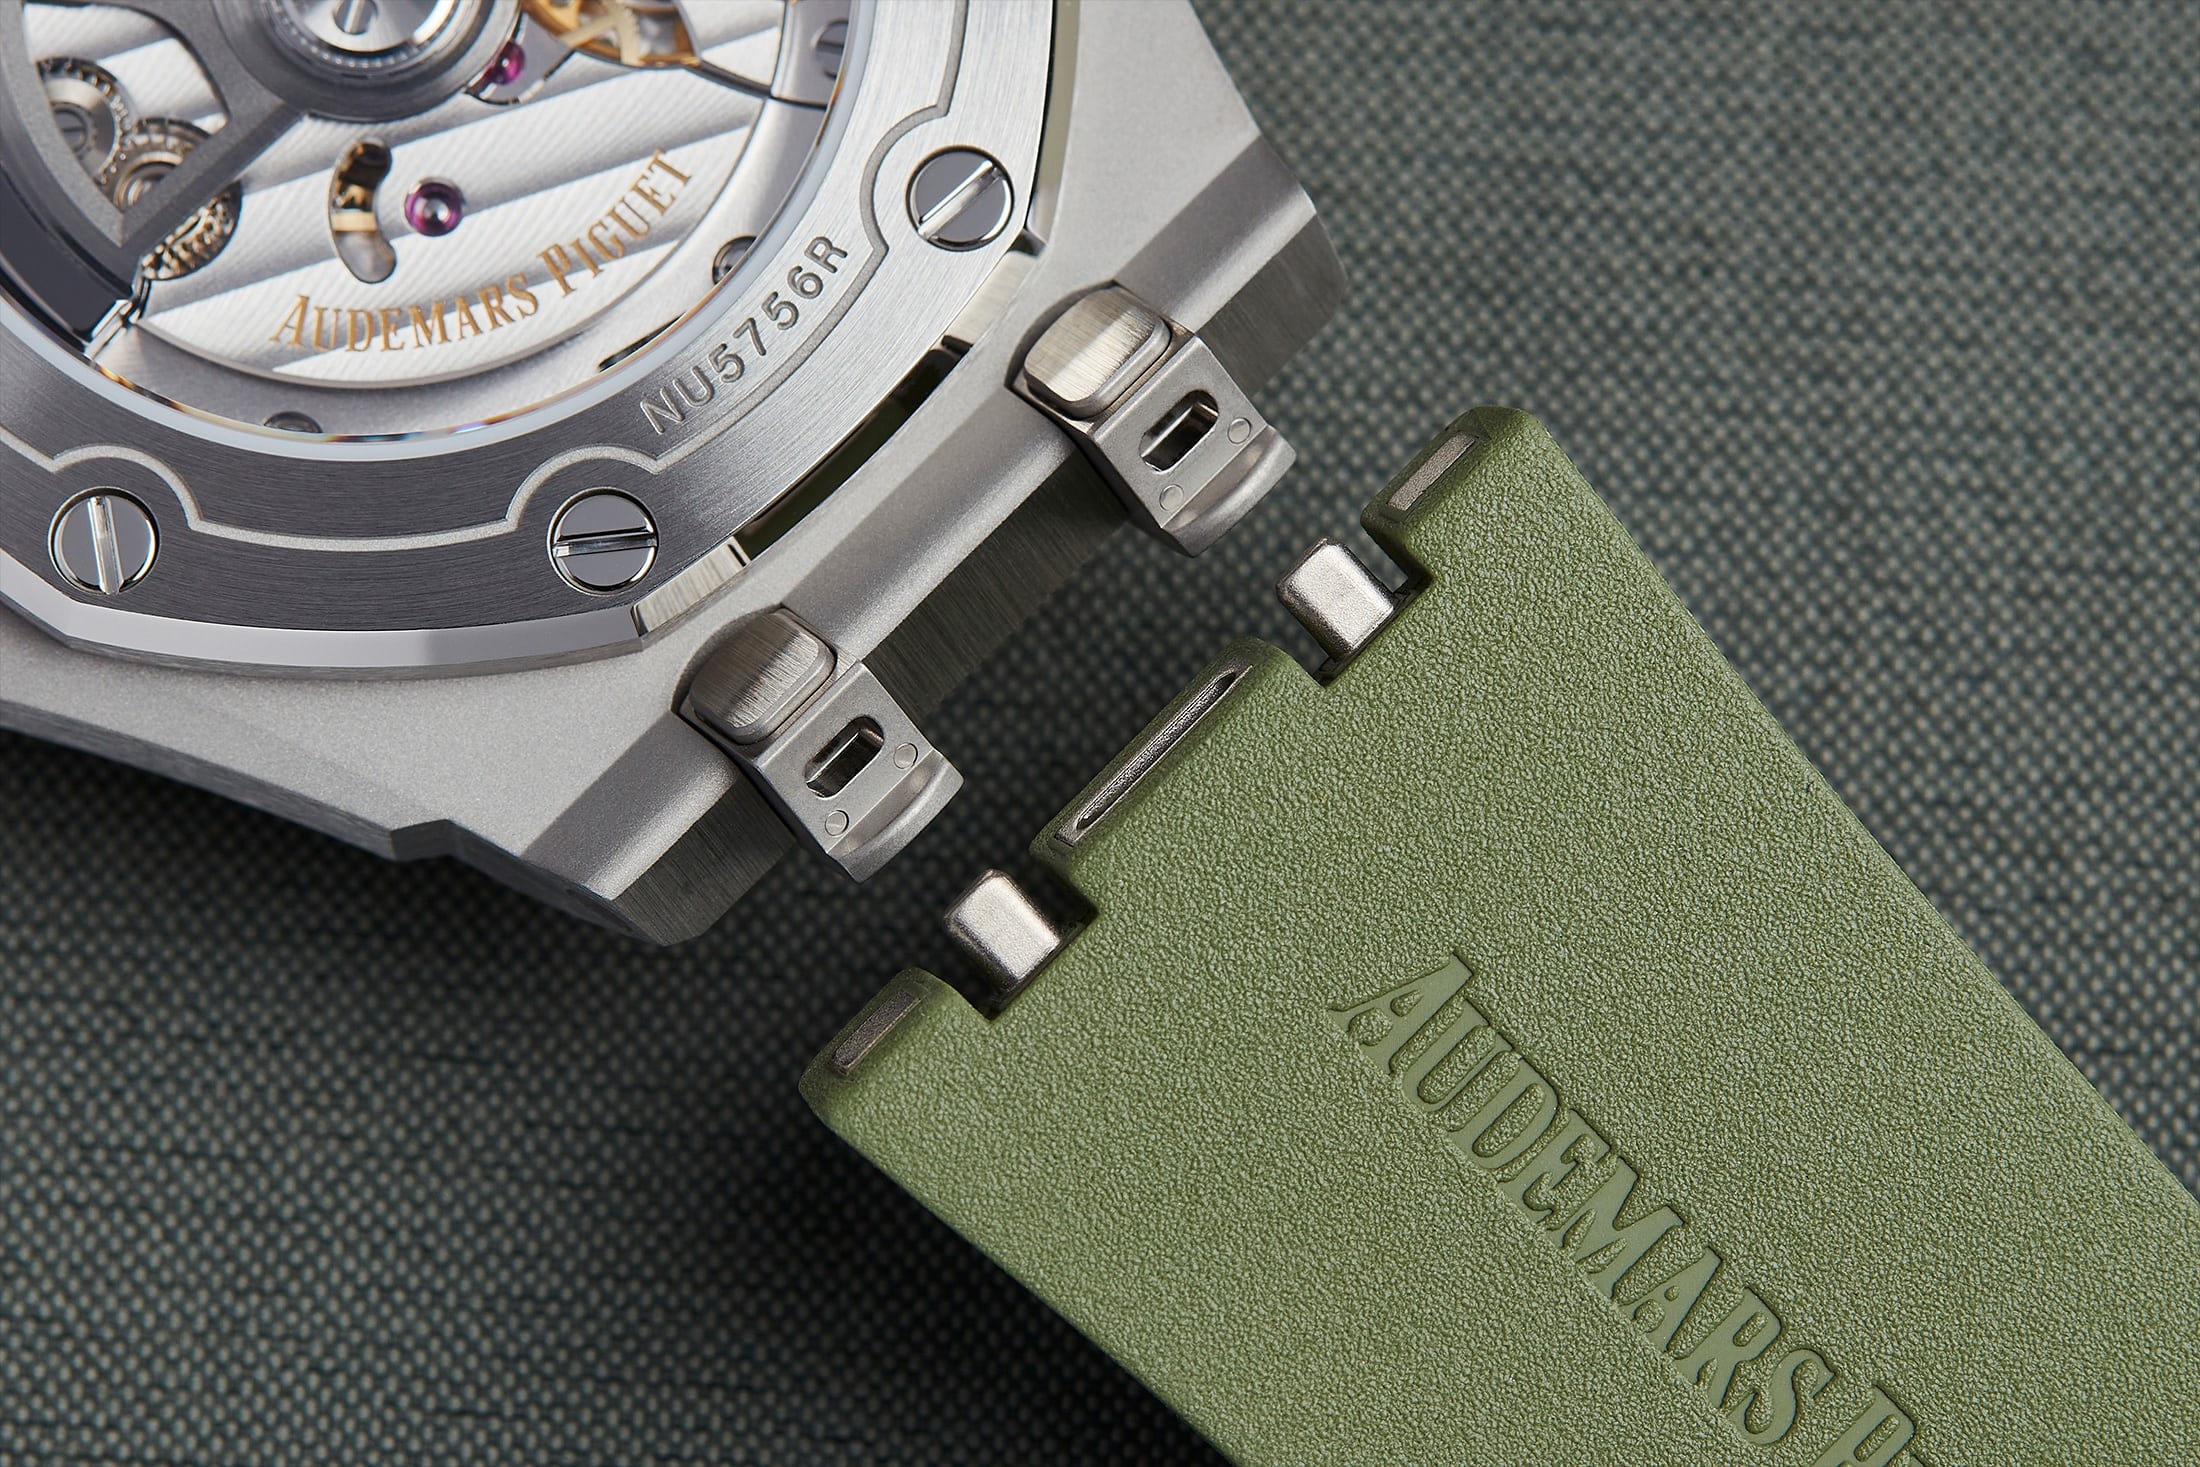 Audemars Piguet 發表全新 Royal Oak Offshore Diver 錶款